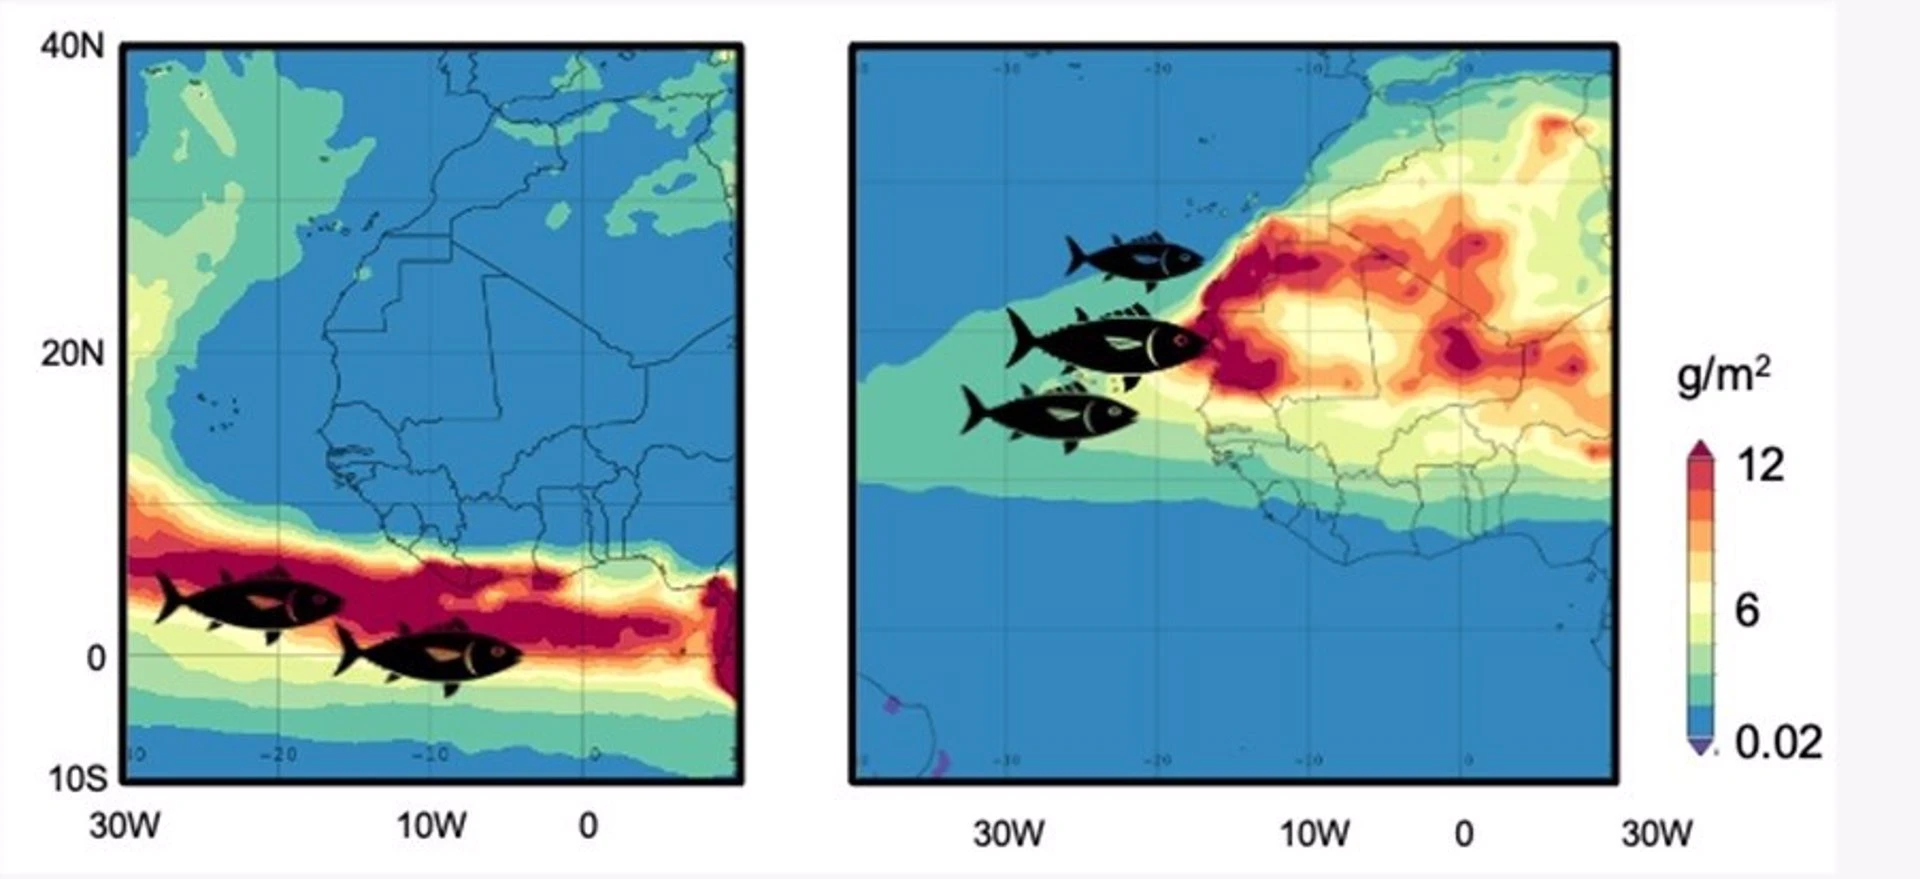 El atún listado del Atlántico se desplaza con el polvo Sahariano / Imagen: CSIC